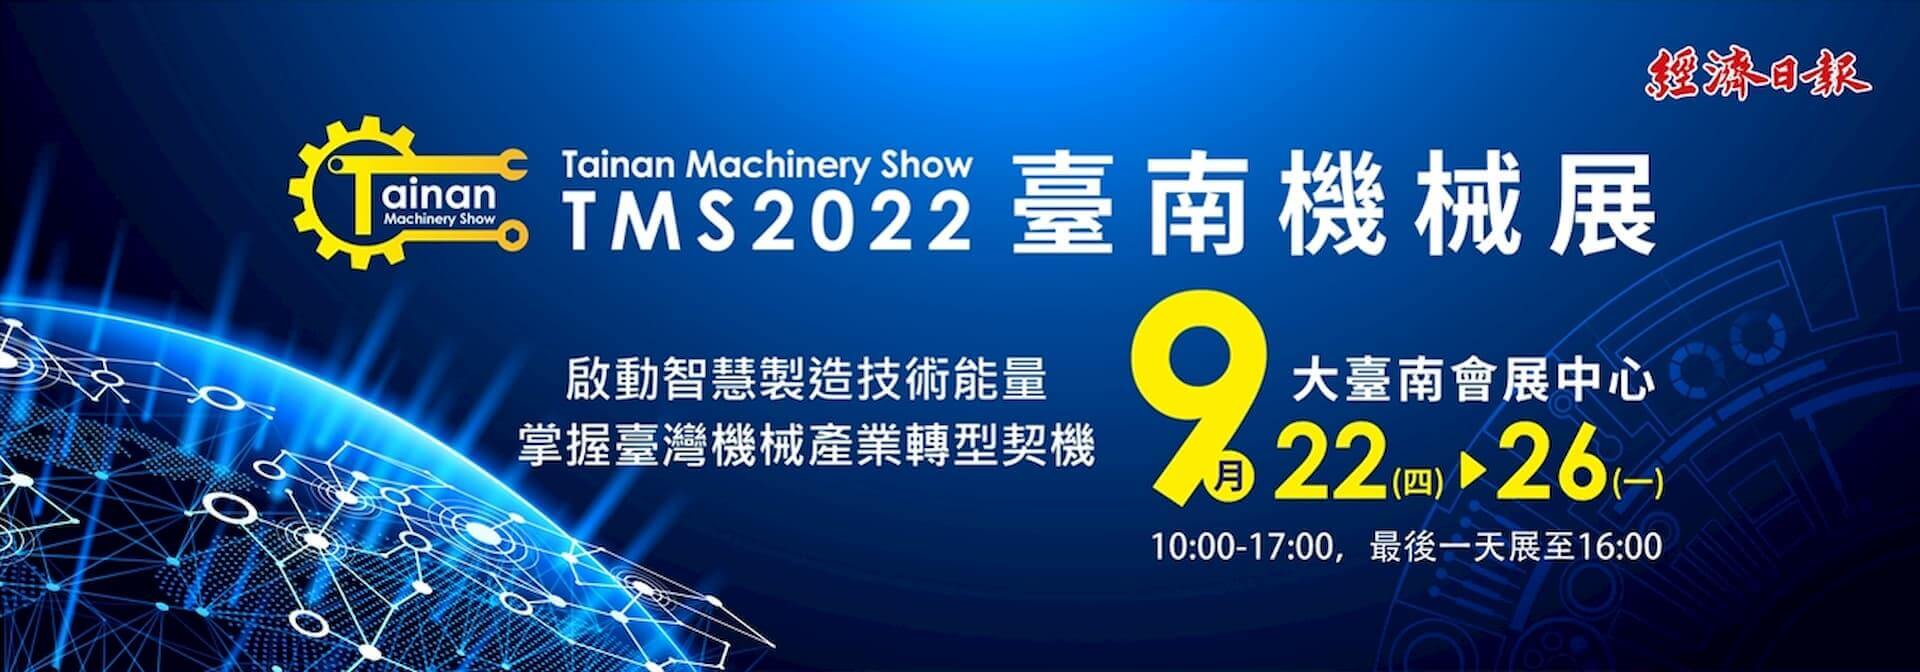 2022 臺南機械展